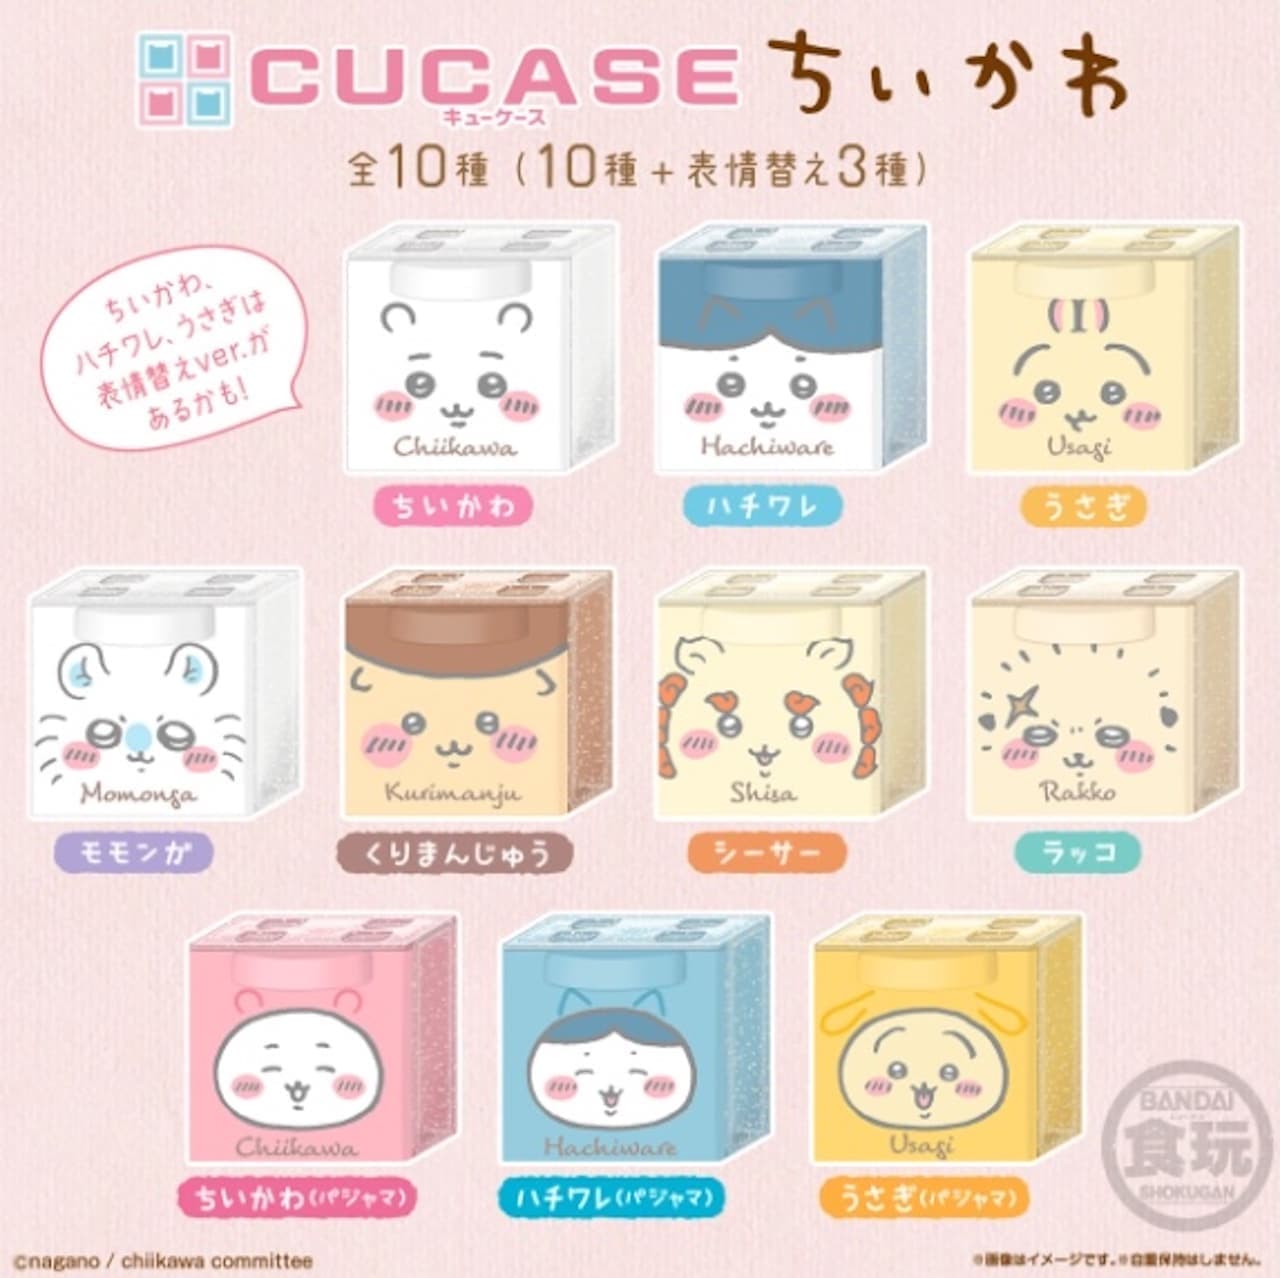 Bandai Candy Division "Chiikawa CUCASE